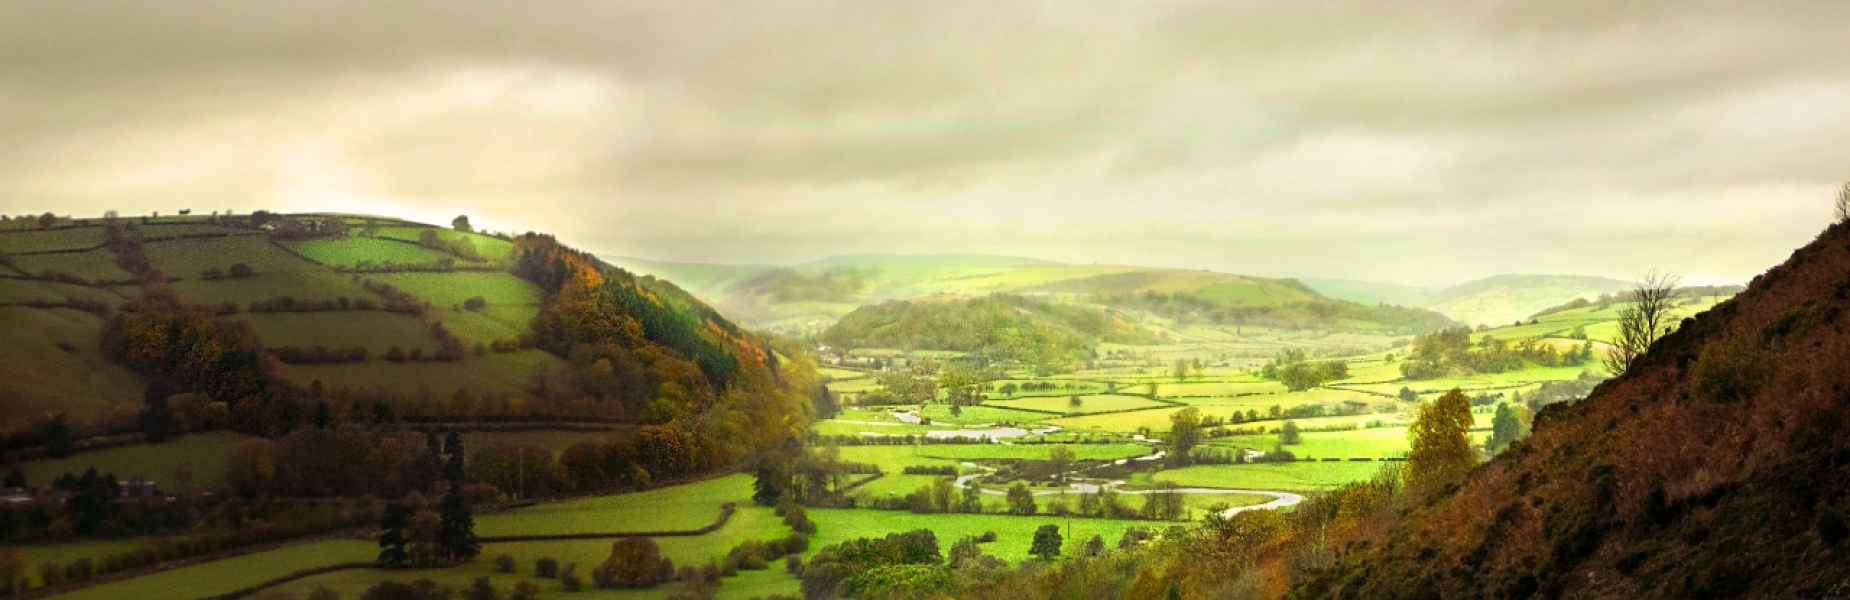 Powys Teme Valley